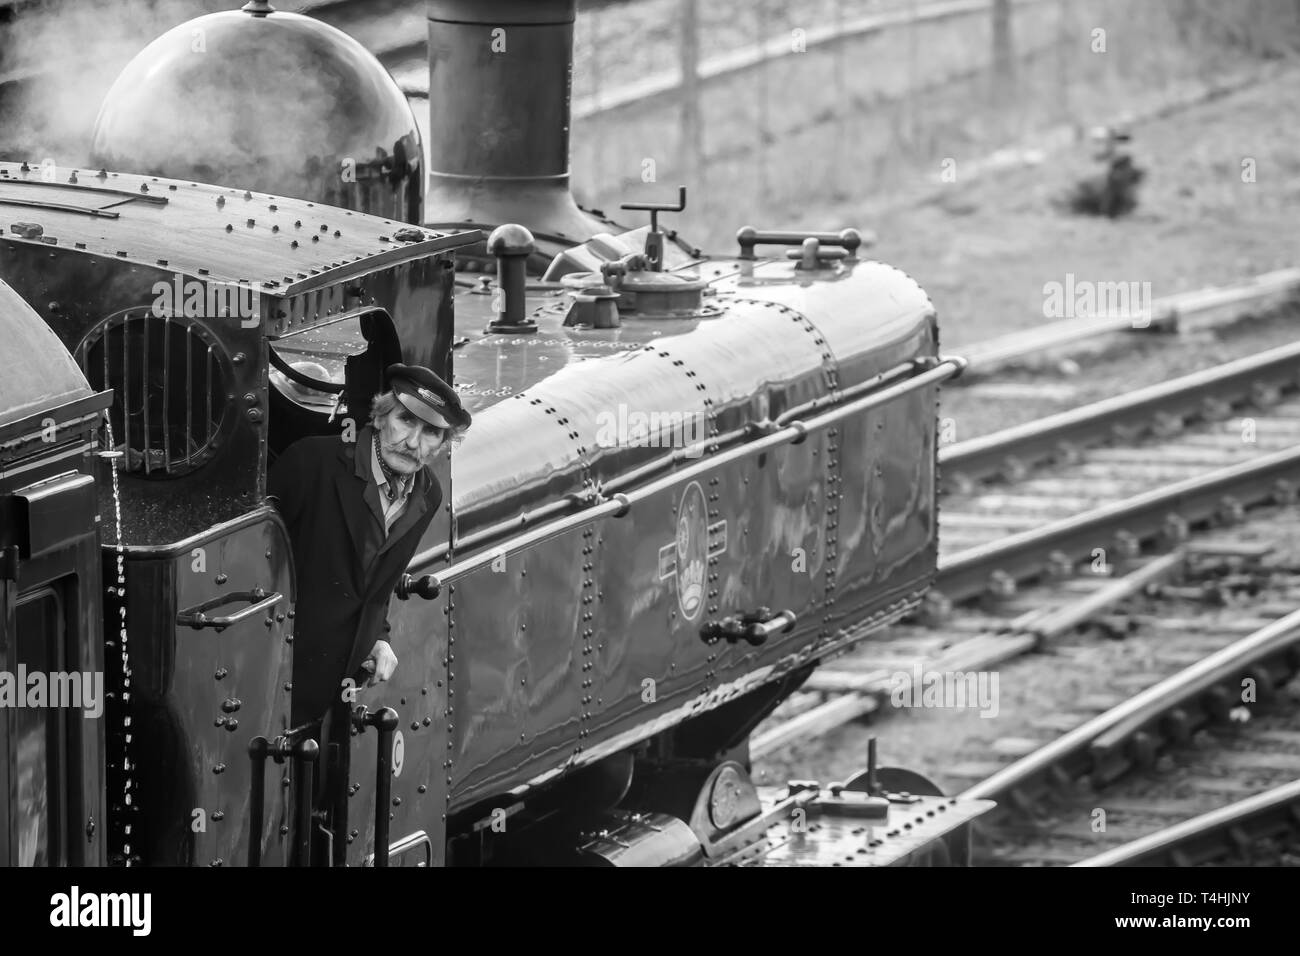 Primer plano en blanco y negro de la locomotora de vapor británica de época en la vía ferroviaria que llega a la estación; conductor de la tripulación del tren de vapor en la cabina que se inclina hacia fuera, mirando hacia arriba. Foto de stock